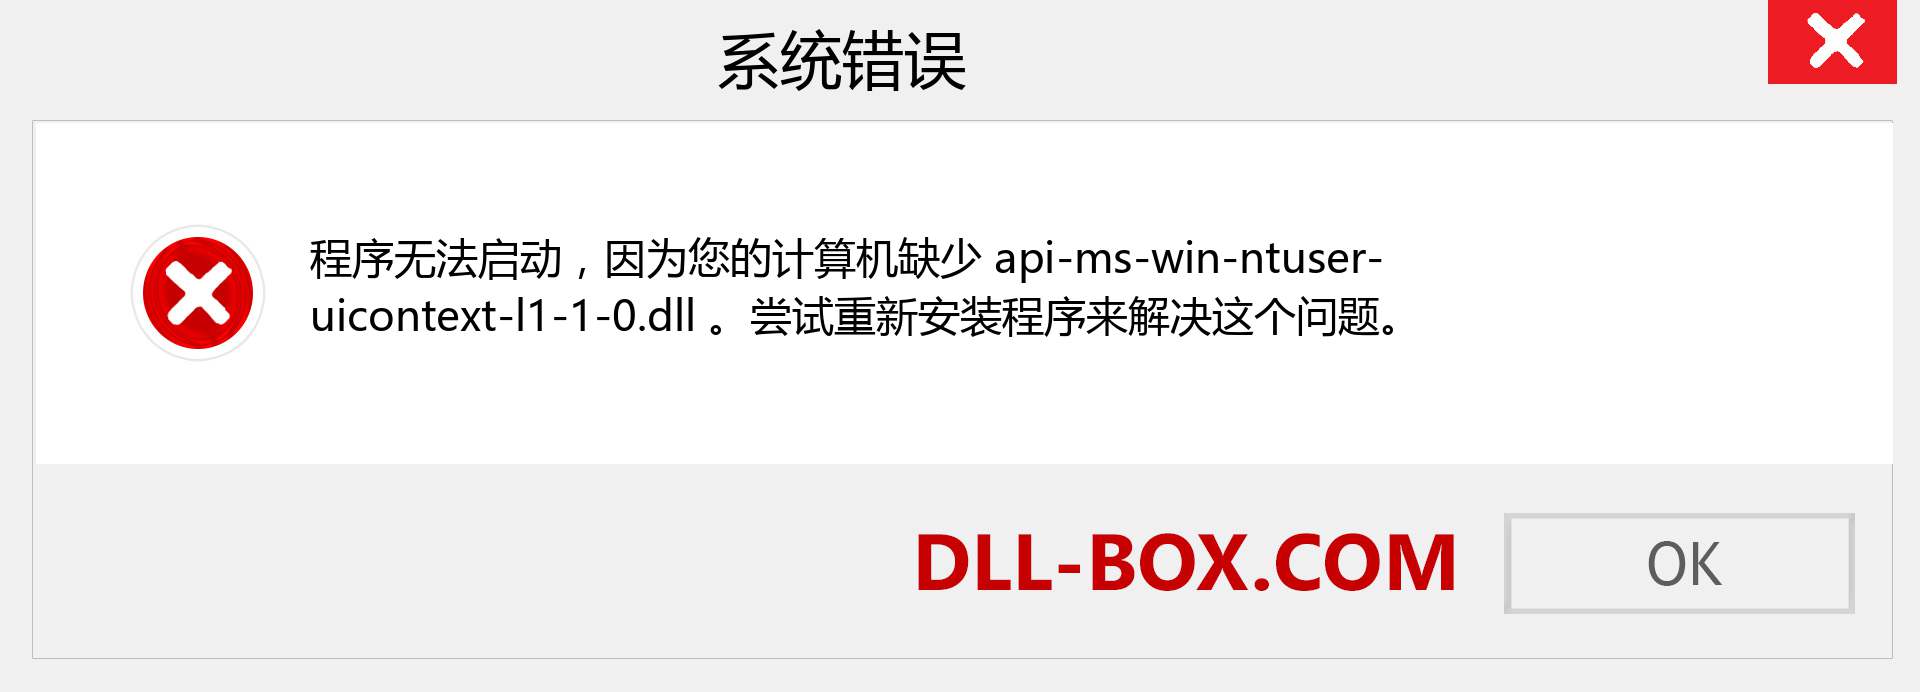 api-ms-win-ntuser-uicontext-l1-1-0.dll 文件丢失？。 适用于 Windows 7、8、10 的下载 - 修复 Windows、照片、图像上的 api-ms-win-ntuser-uicontext-l1-1-0 dll 丢失错误